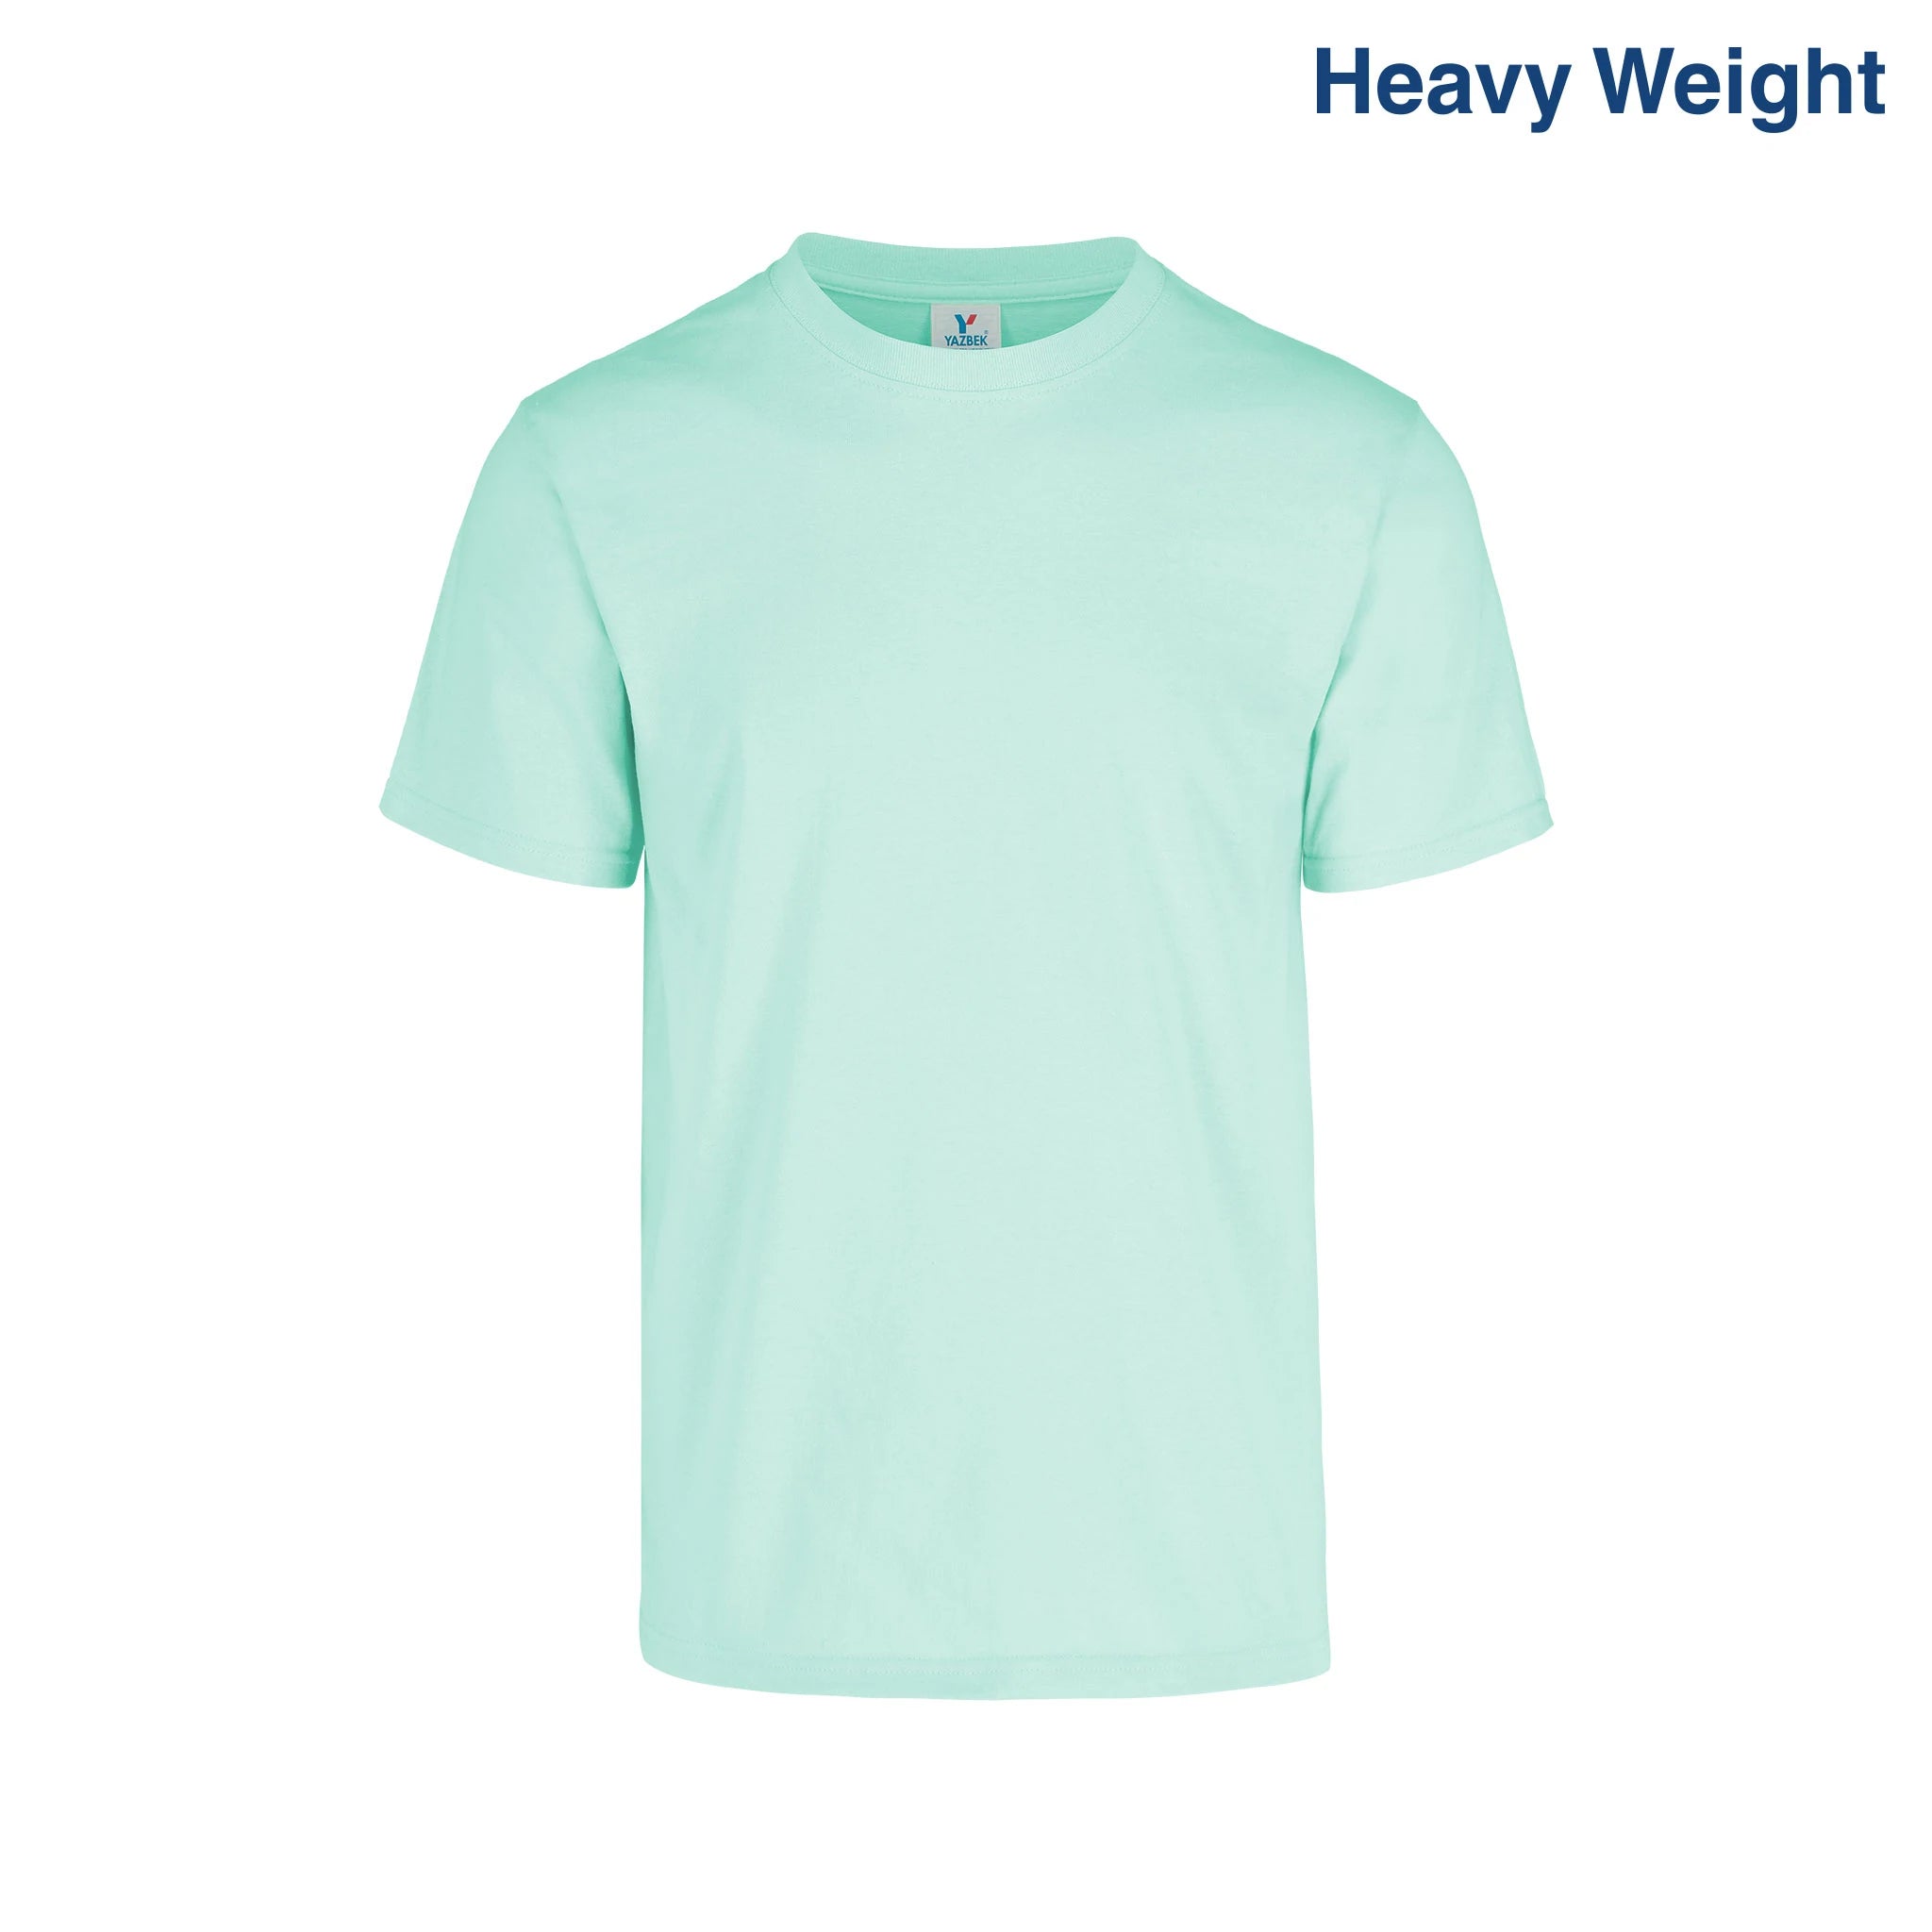 Men's Crew Neck Sleeveless T Shirt (White) – Yazbek USA Mint